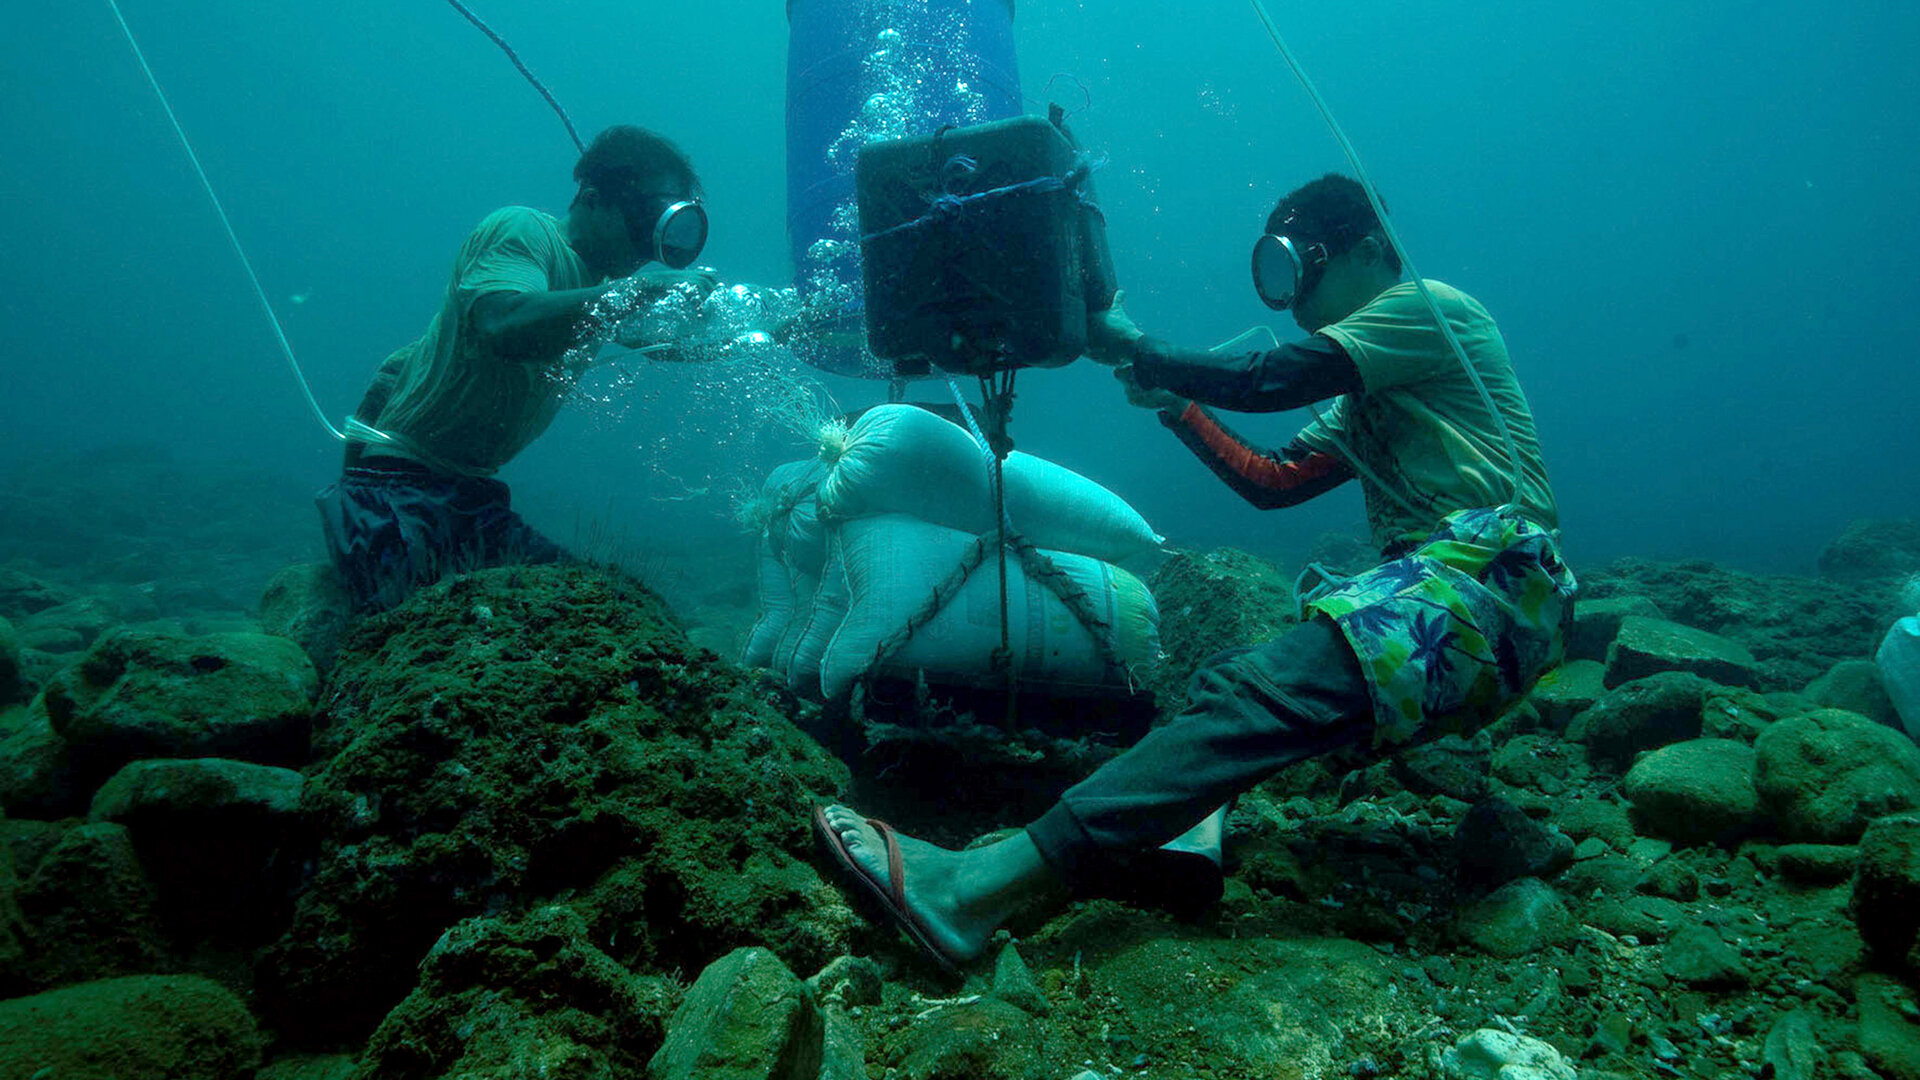 Les orpailleurs des mers aux Philippines sur Arte